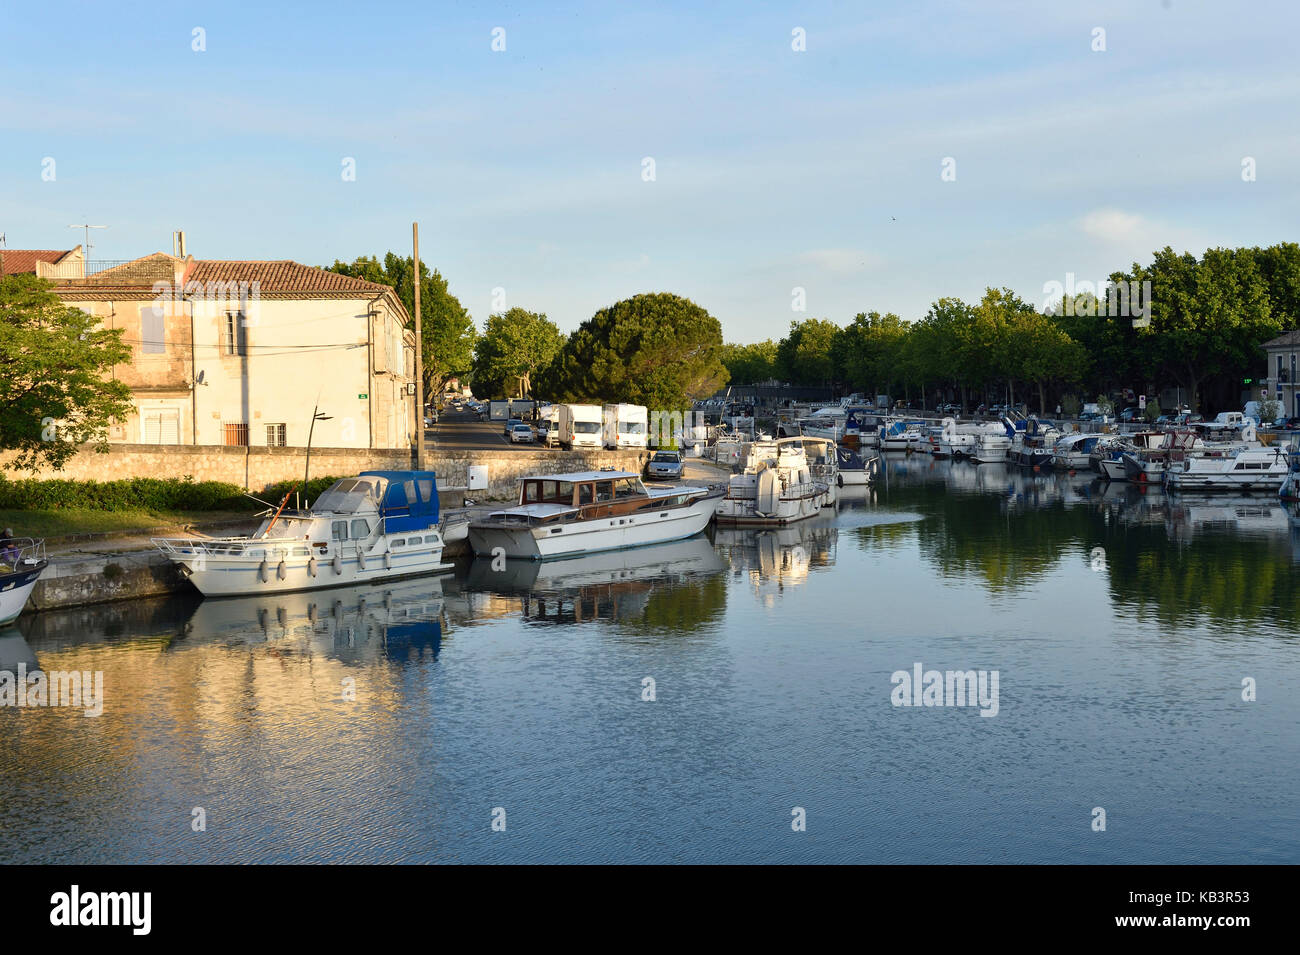 France, Gard, Beaucaire, Canal du Rhone to Sete, Quai de l'Ecluse Stock Photo